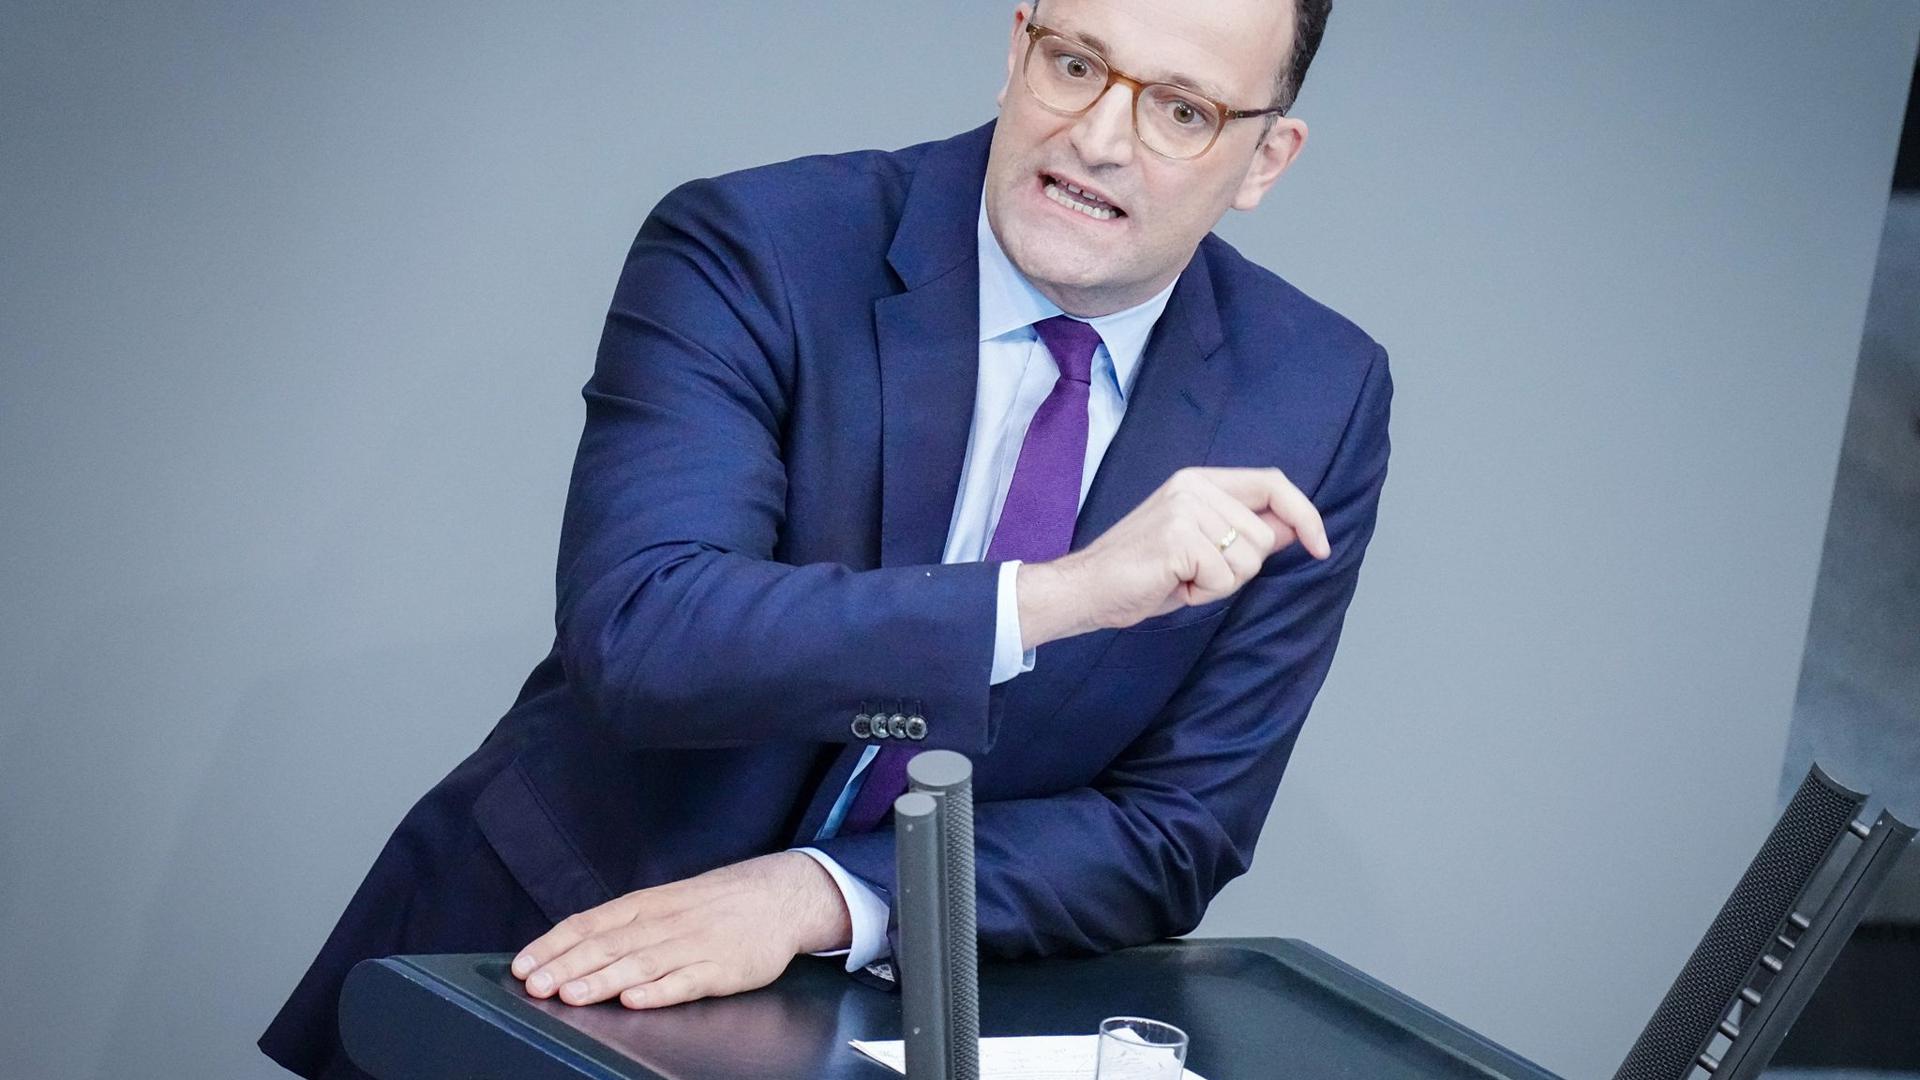 Jens Spahn ist ehemaliger Bundesgesundheitsminister.